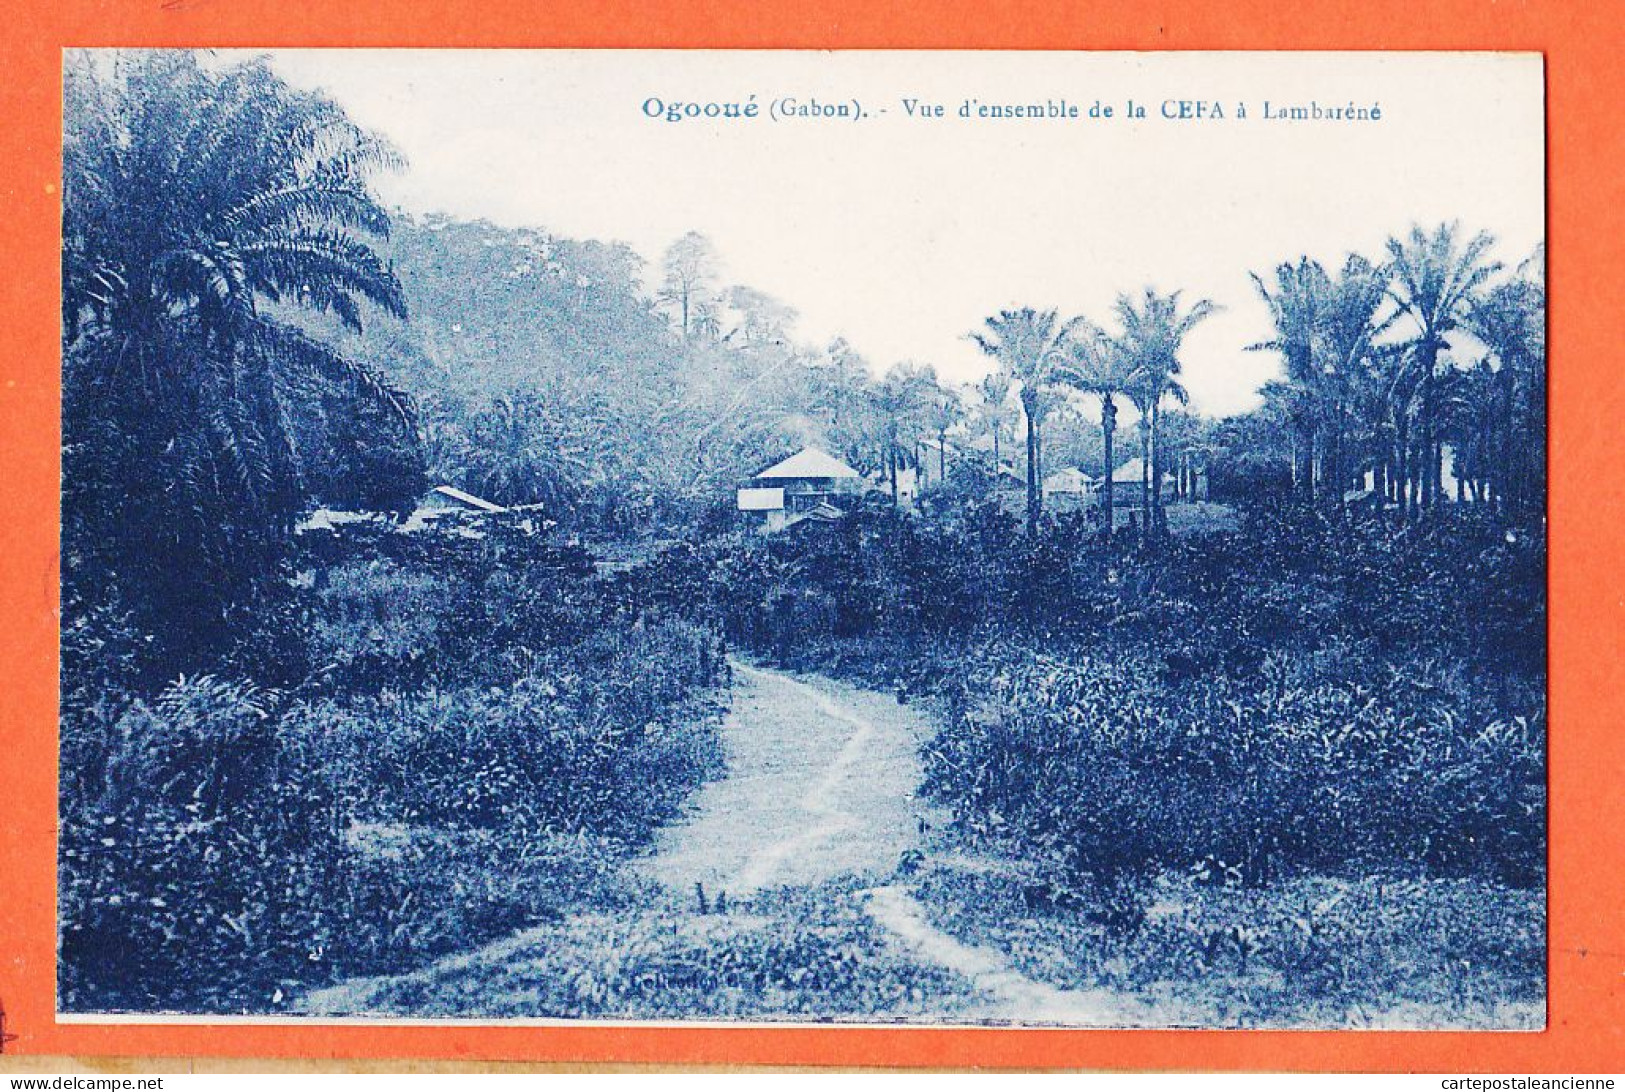 32757 / ⭐ OGOOUE (•◡•) Gabon ◉ Vue D'Ensemble De La CEFA à LAMBARENE 1920s ◉ Collection C.E.F.A CEFA  - Gabun